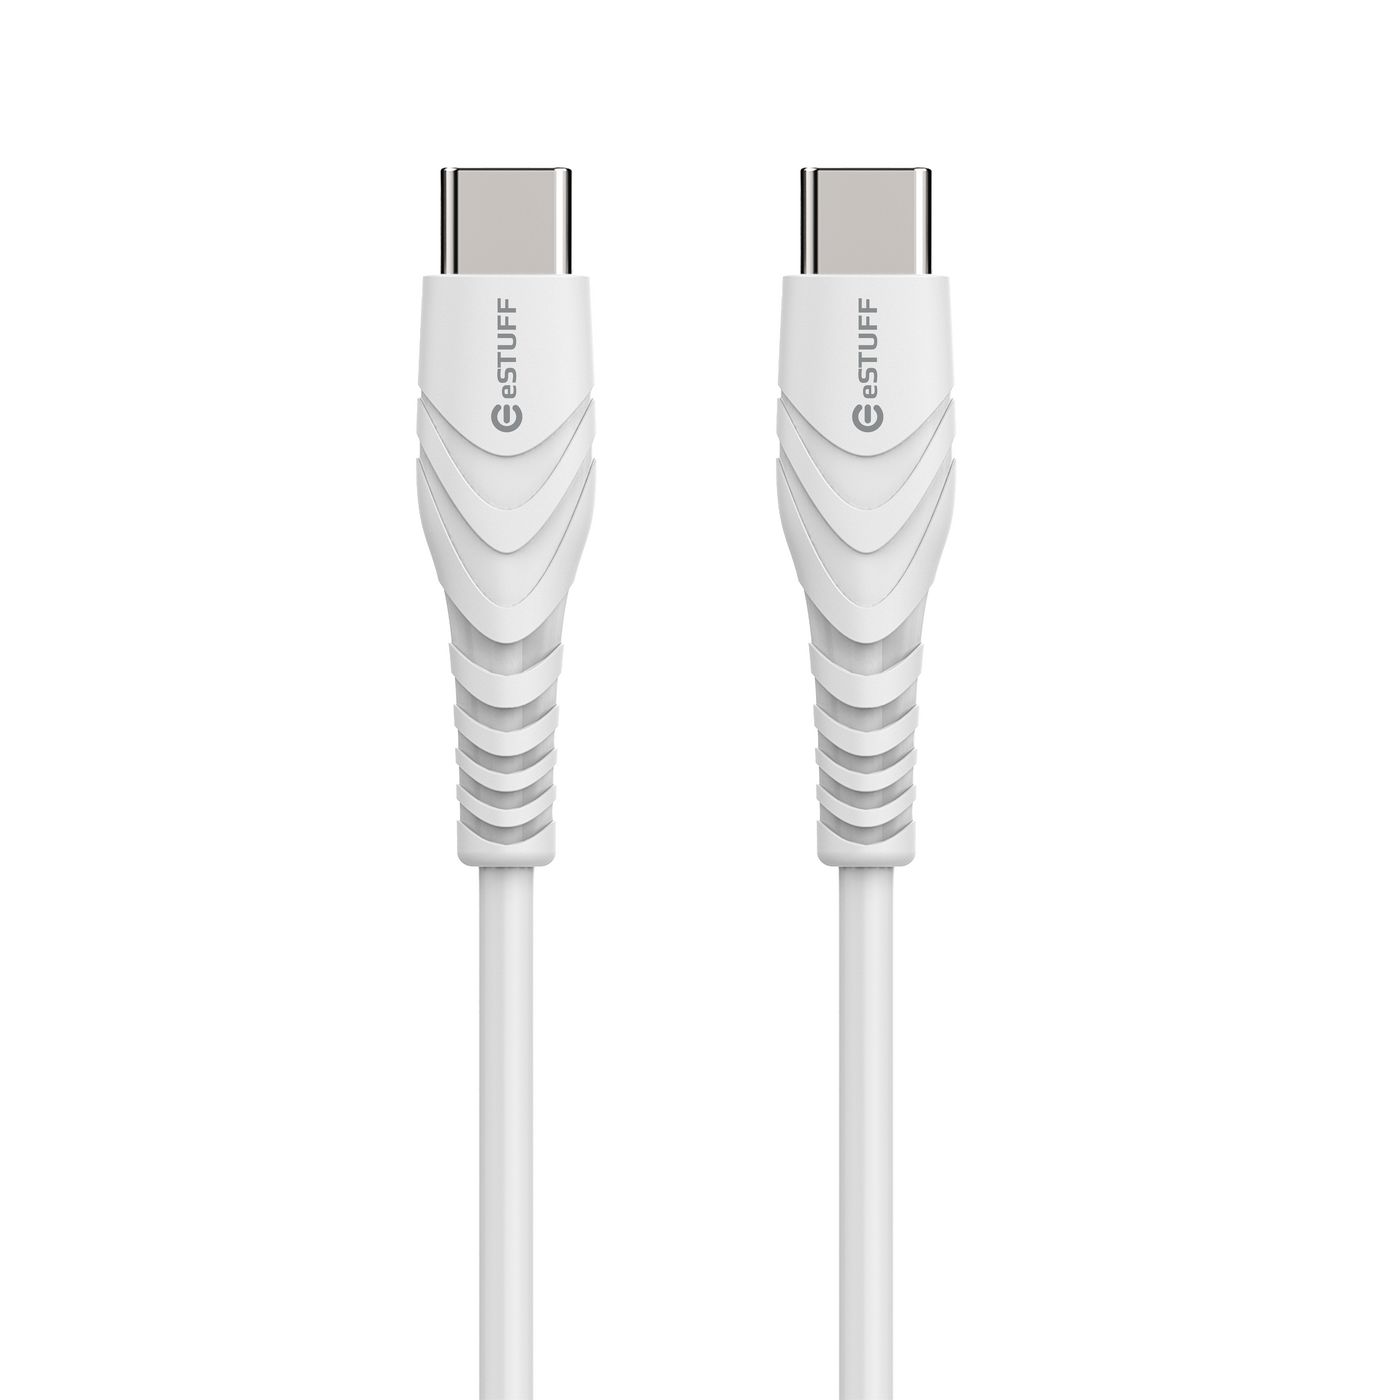 USB-c - C Cable - USB-c Male / USB-c Male - 1m White Bulk